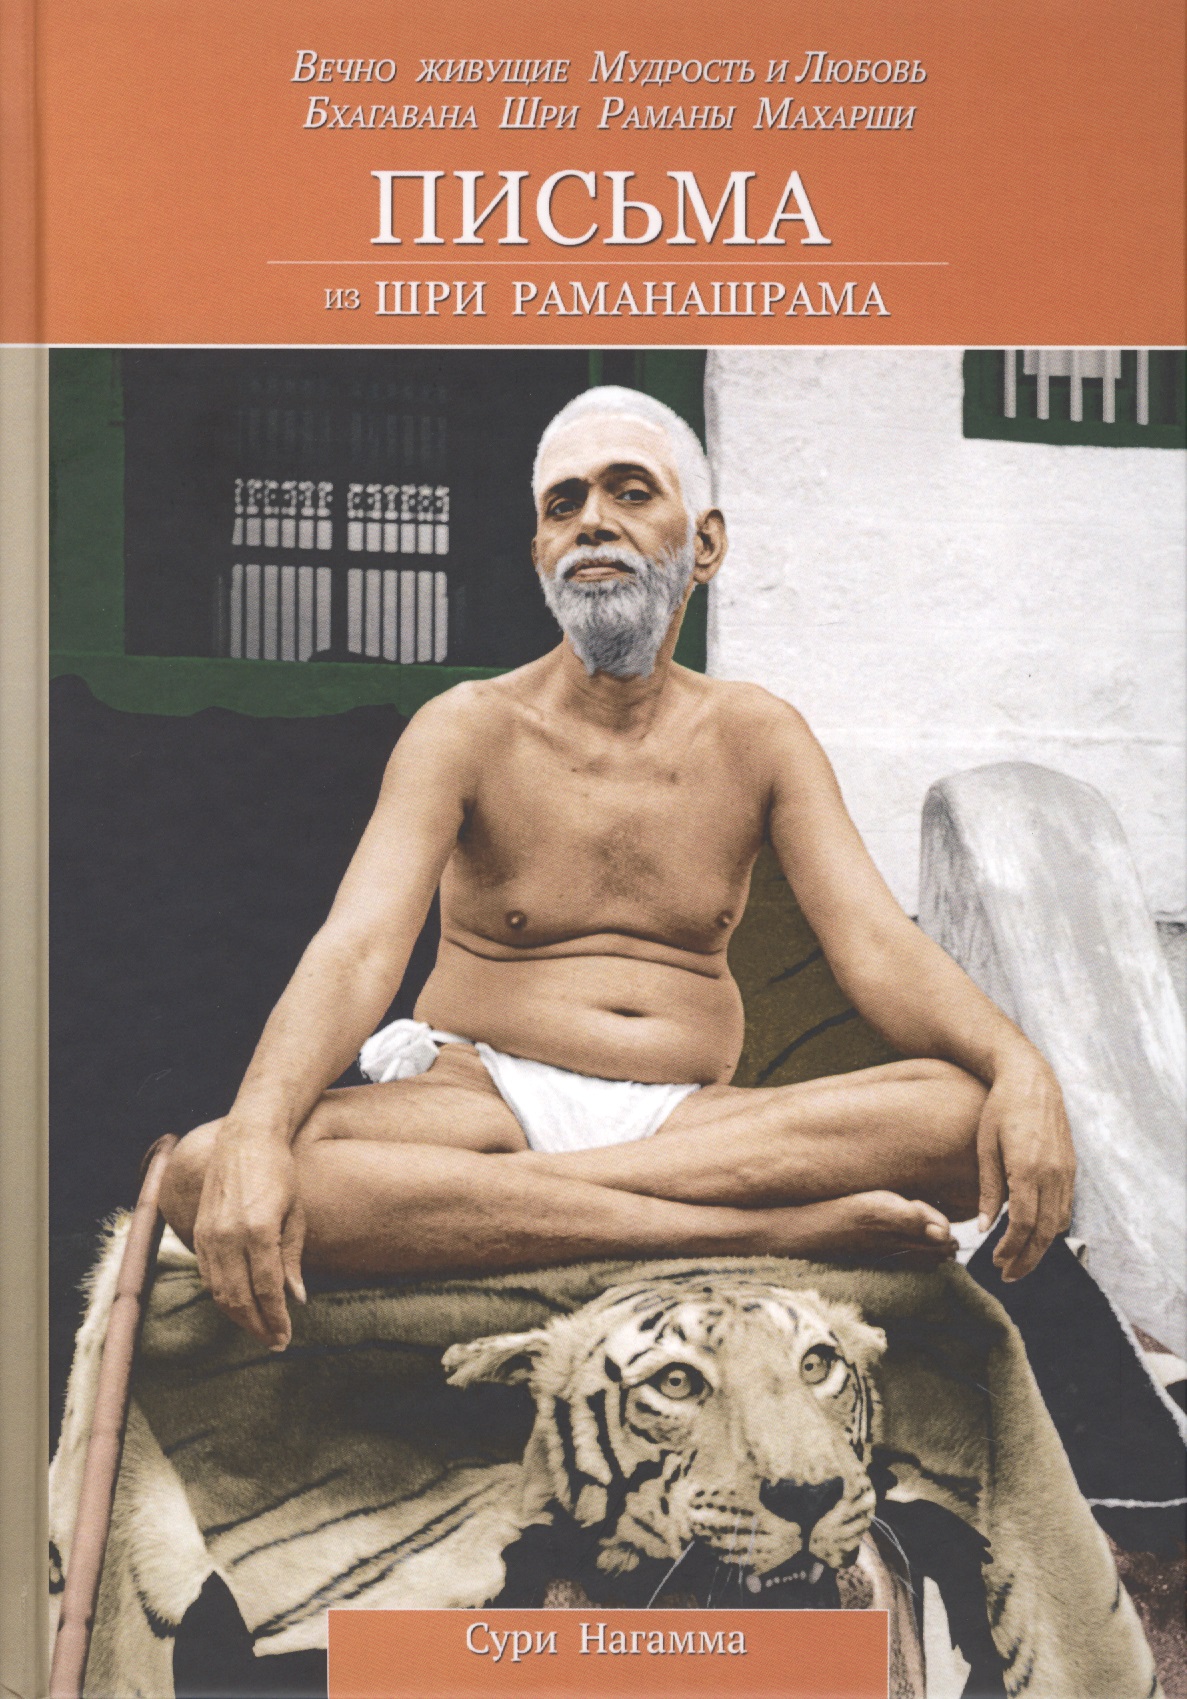 Письма из Шри Раманашрама. Вечно живущие Мудрость и Любовь Бхагавана Шри Раманы Махарши. Том I и II